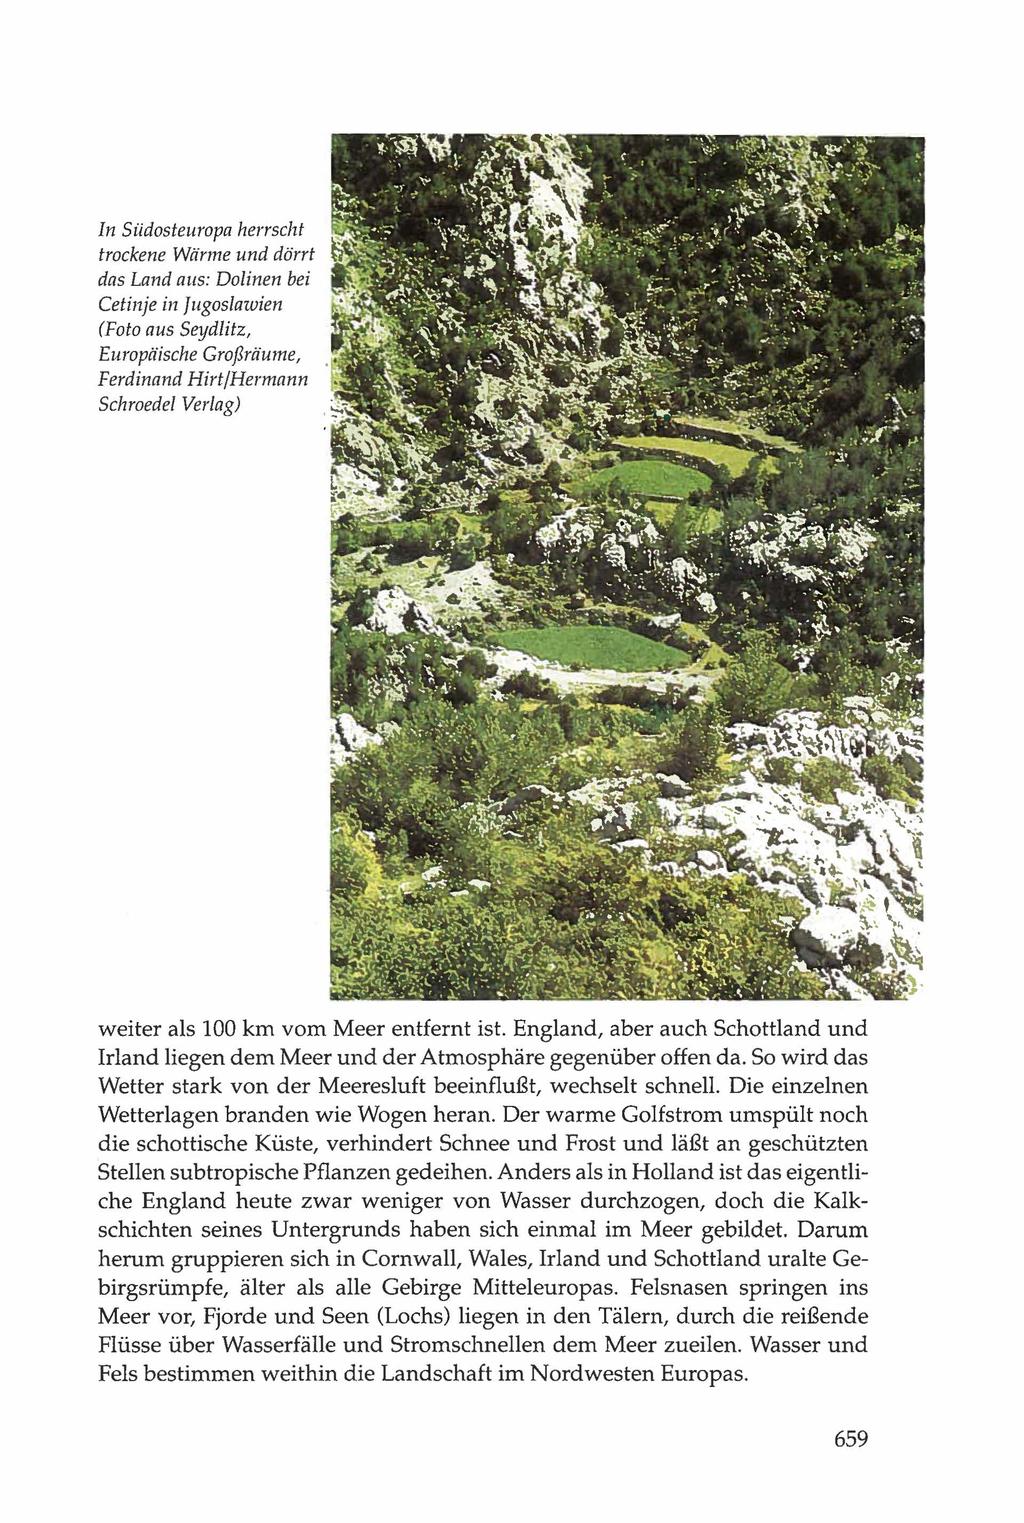 In Südosteuropa herrscht trockene Wärme und dörrt das Land aus: Dolinen bei Cetinje in Jugoslawien (Foto aus Seydlitz, Europäische Großräume, Ferdinand Hirt/Hermann Schroedel Verlag) weiter als 100